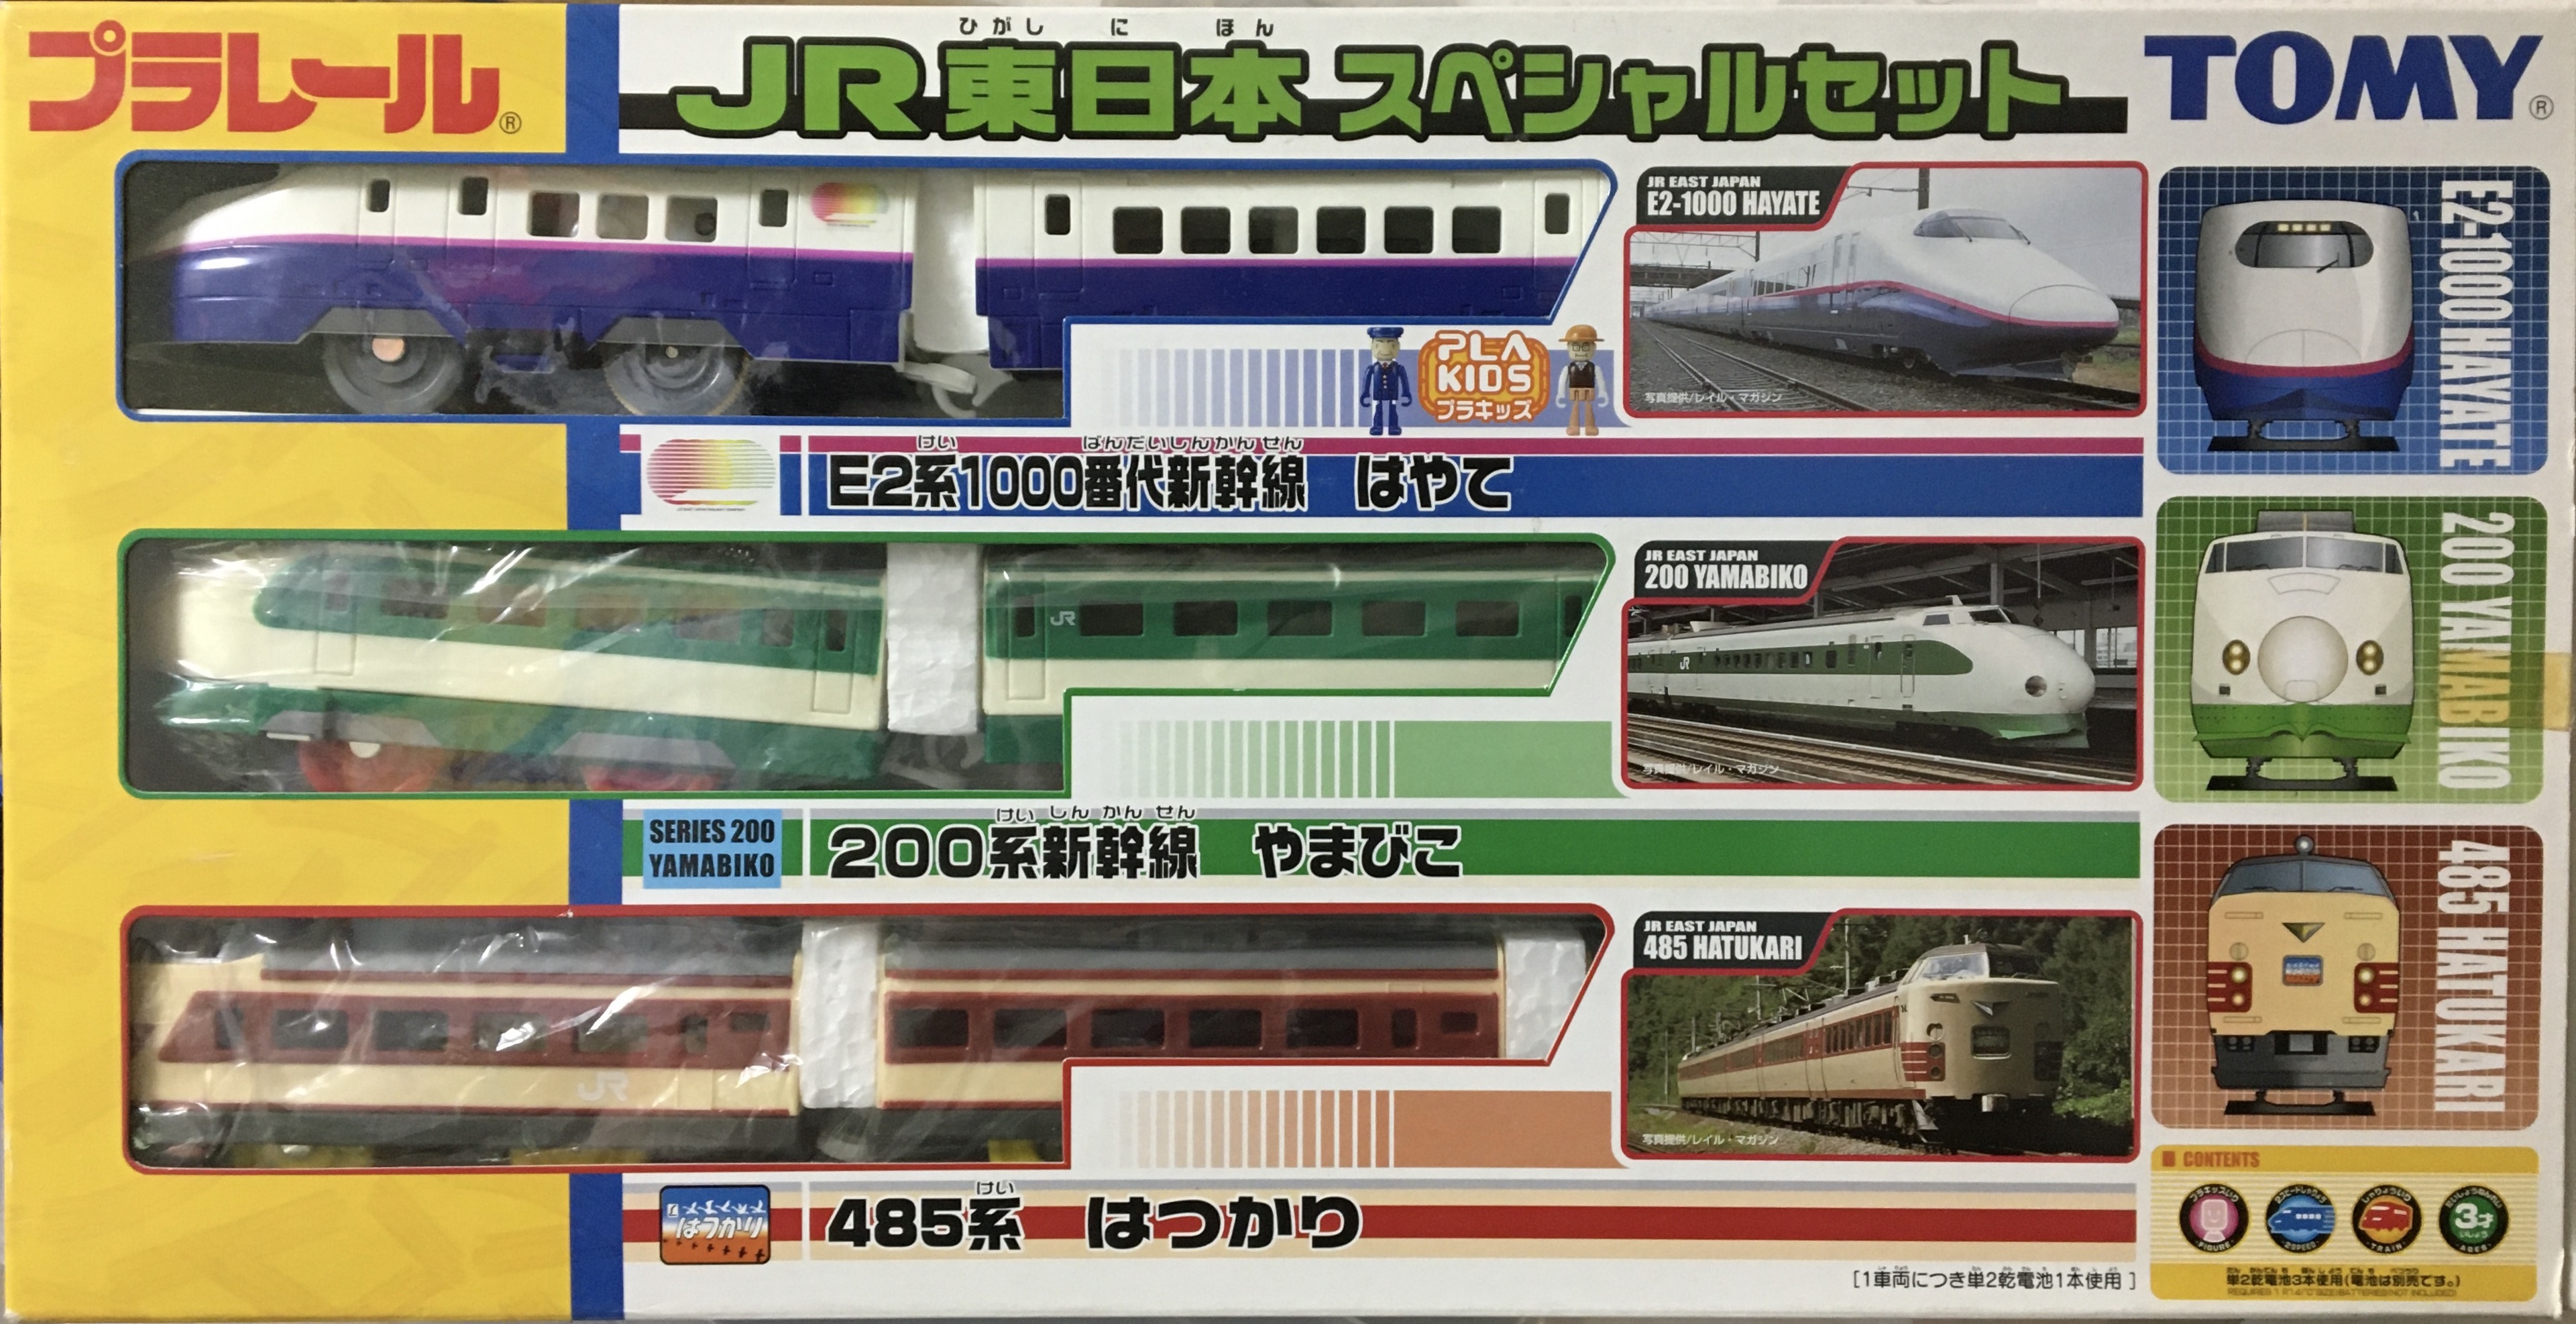 ☆長島様専用☆プラレール新幹線アニバーサリースペシャルセット400系